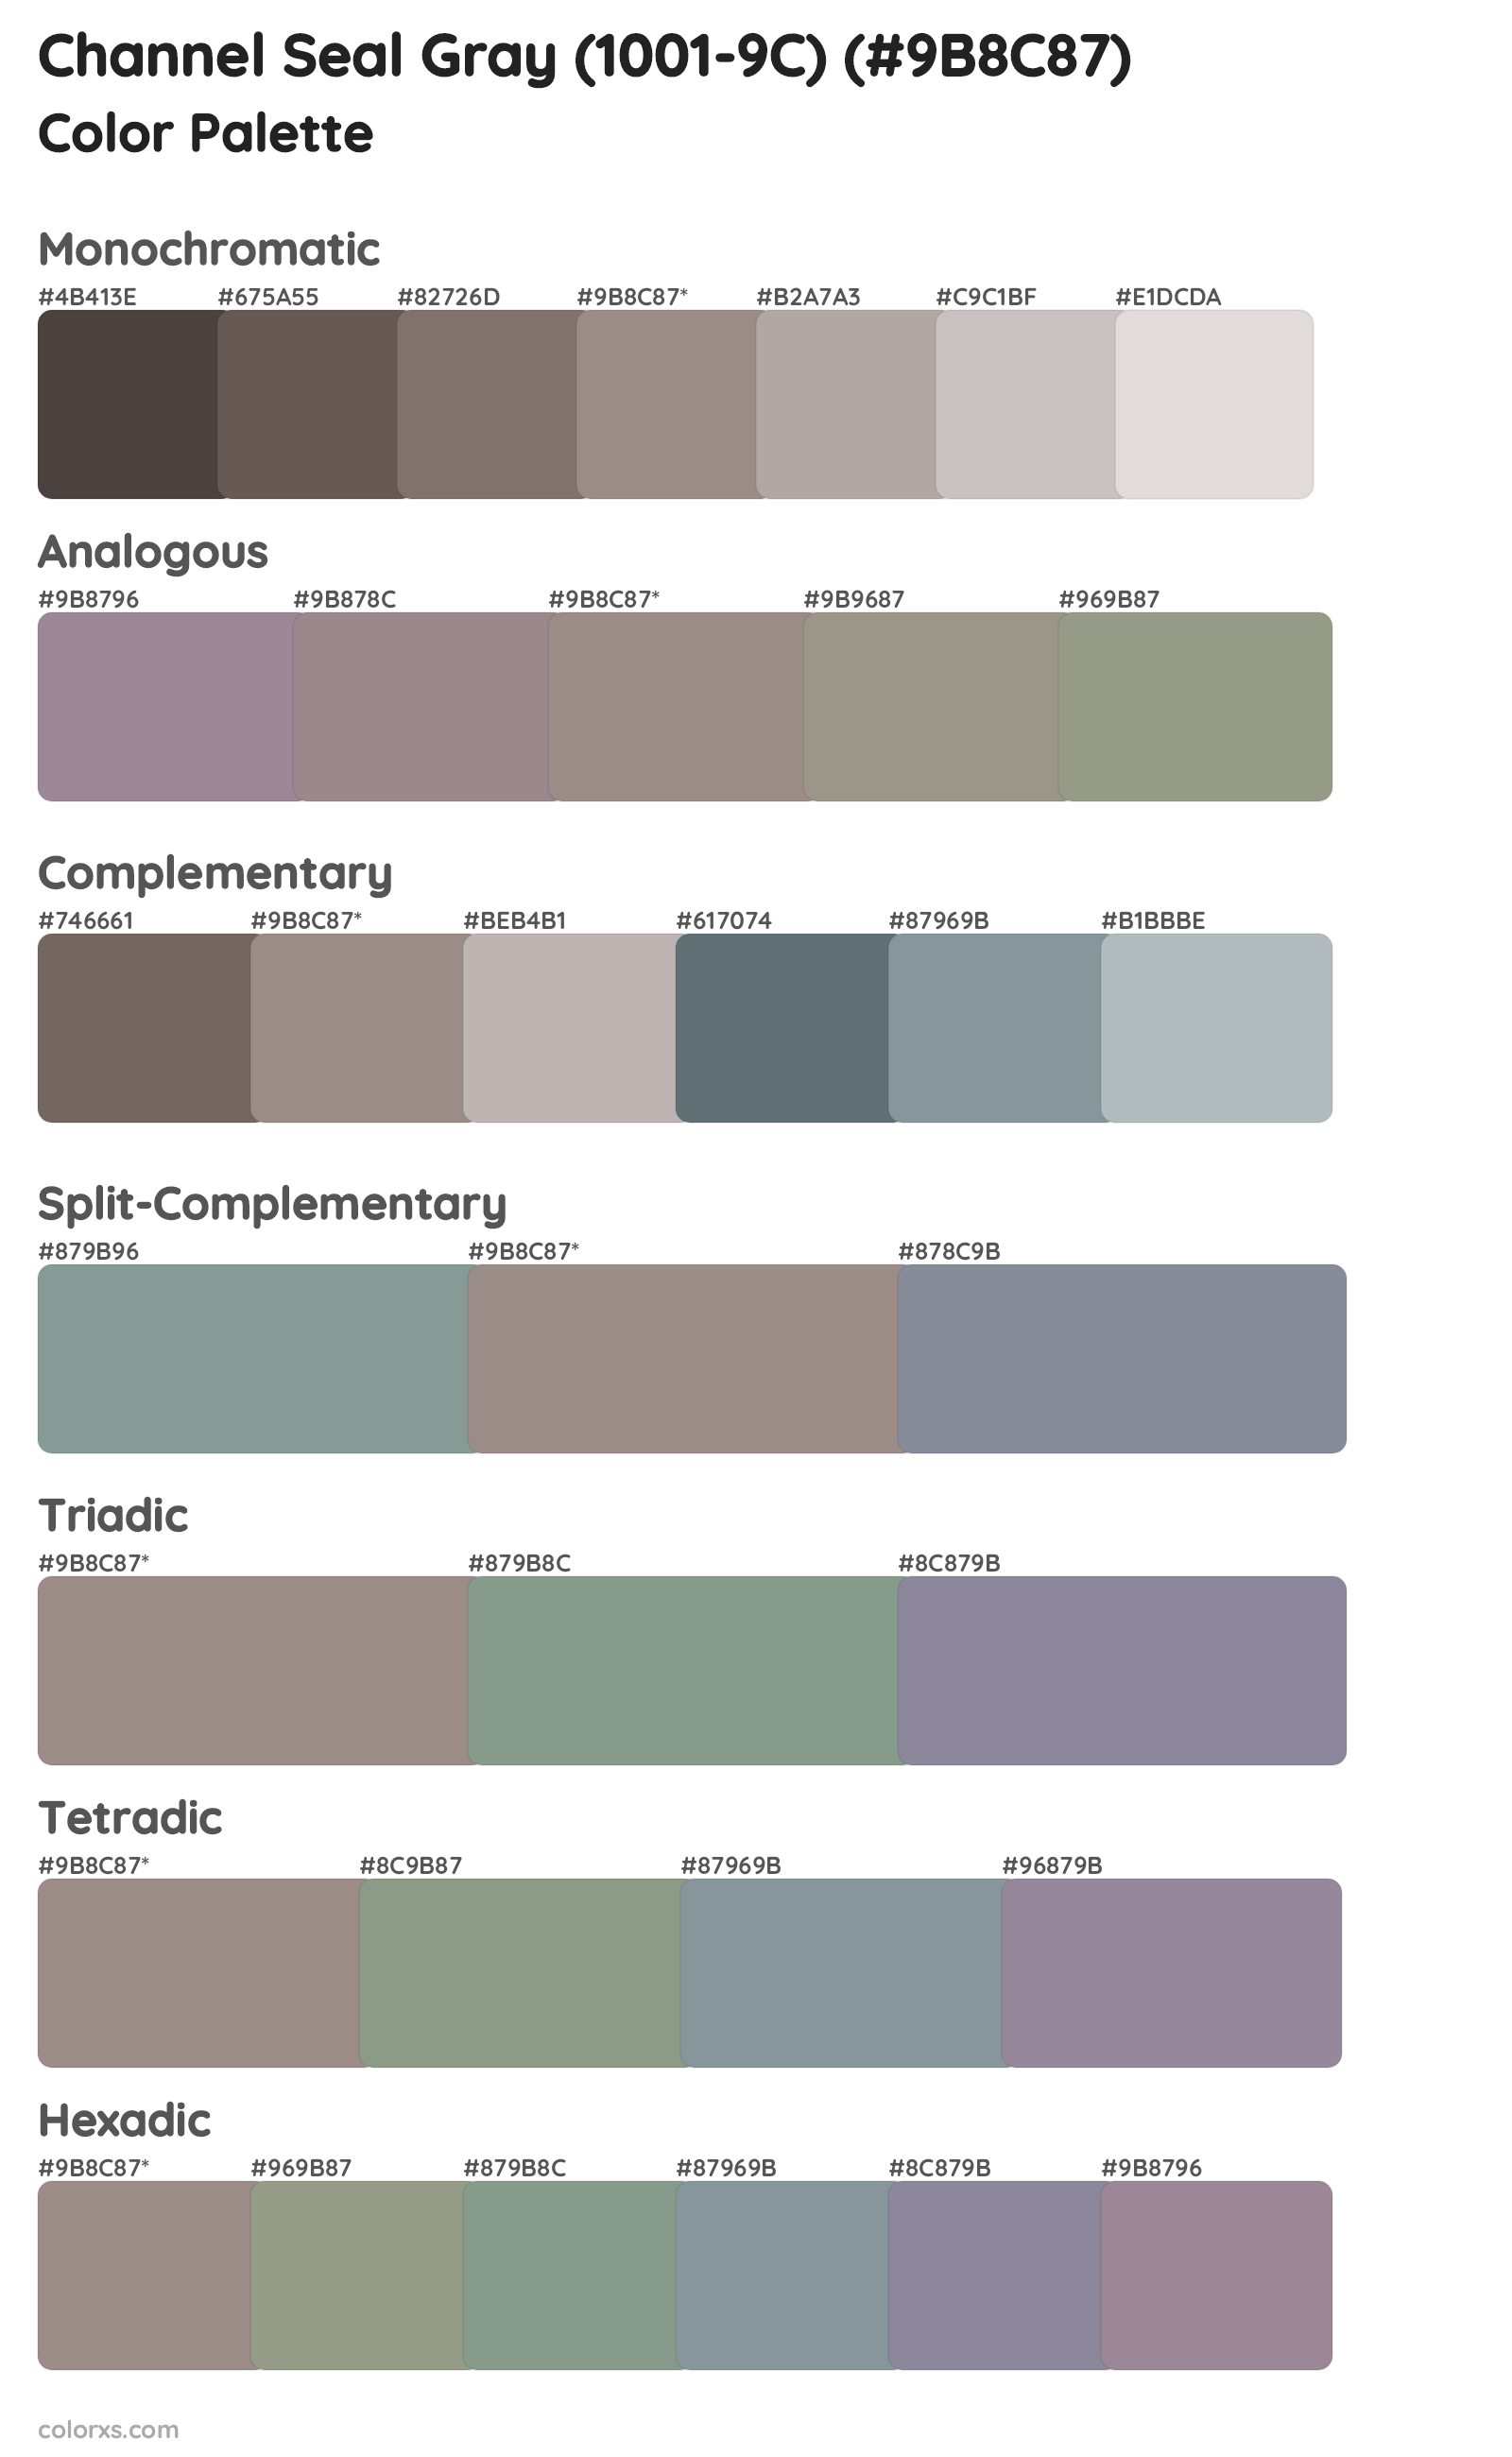 Channel Seal Gray (1001-9C) Color Scheme Palettes